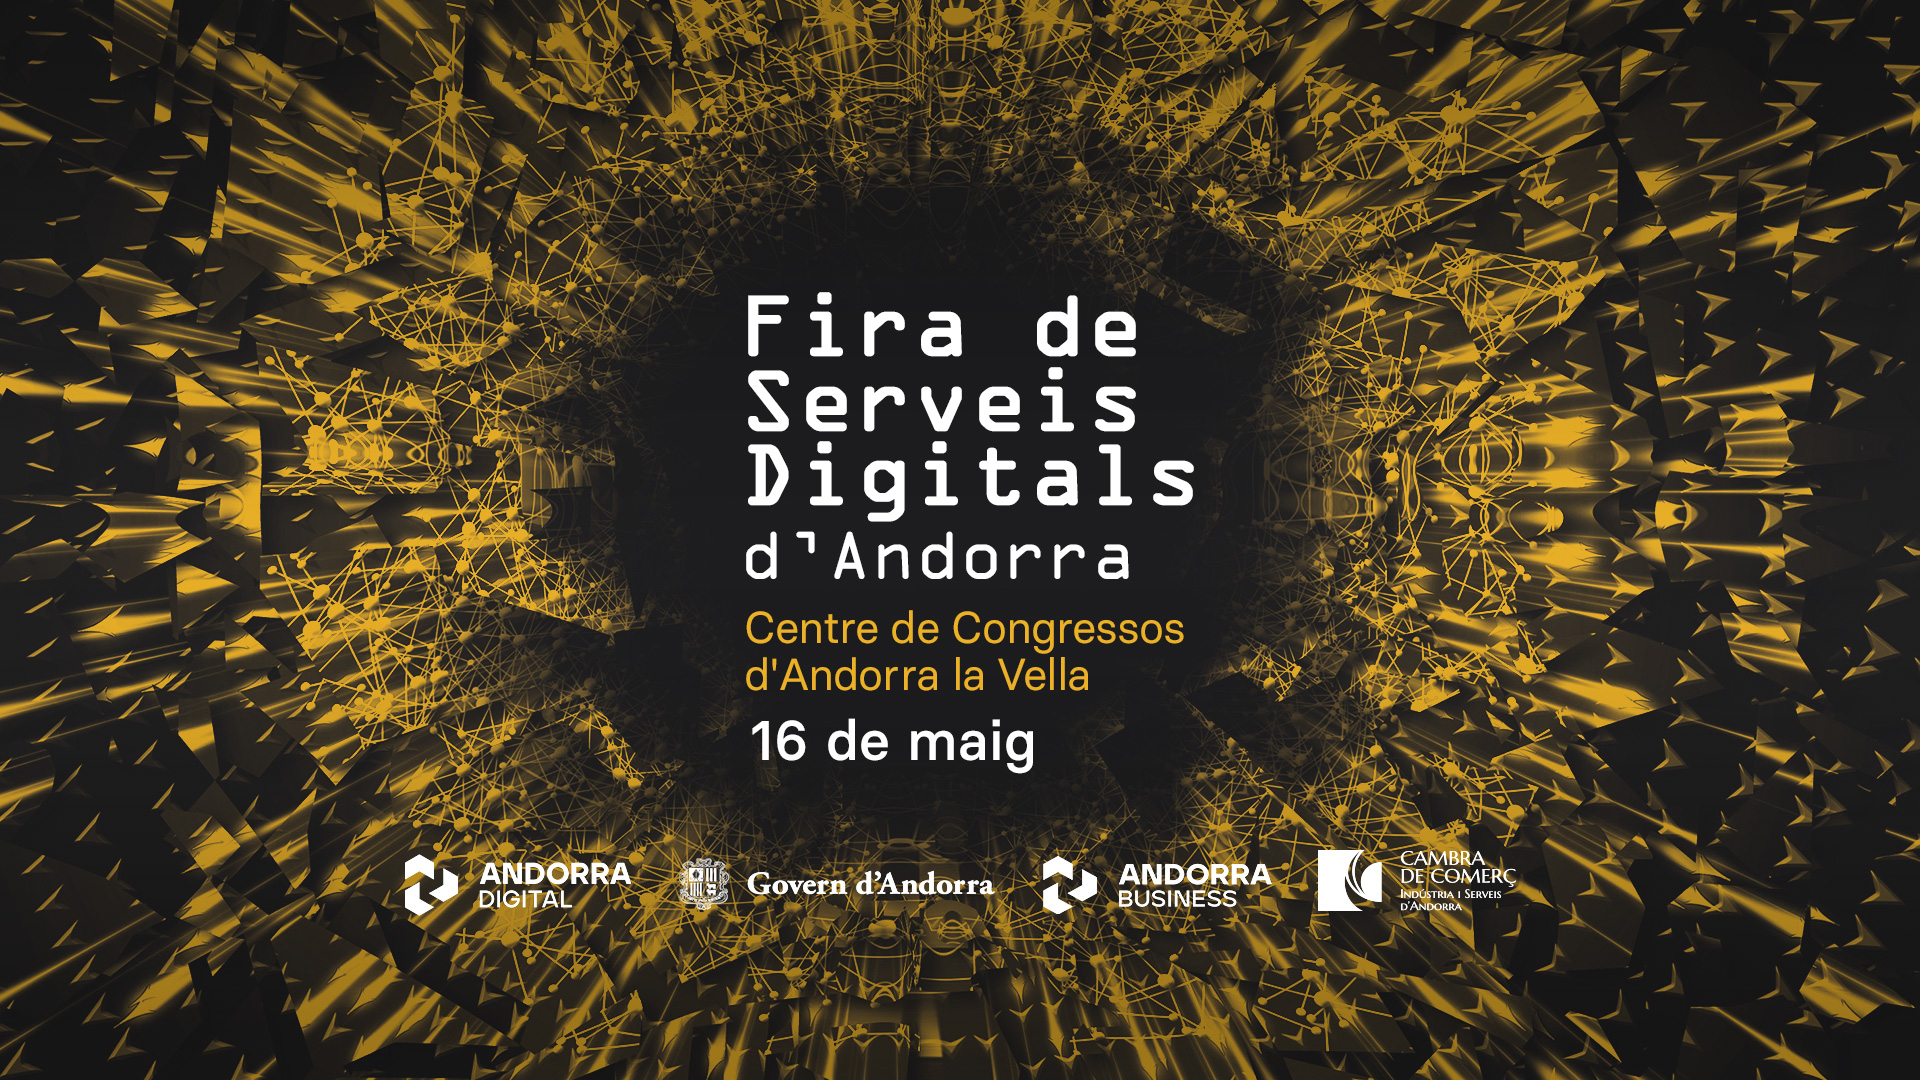 Fira de serveis digitals d'Andorra